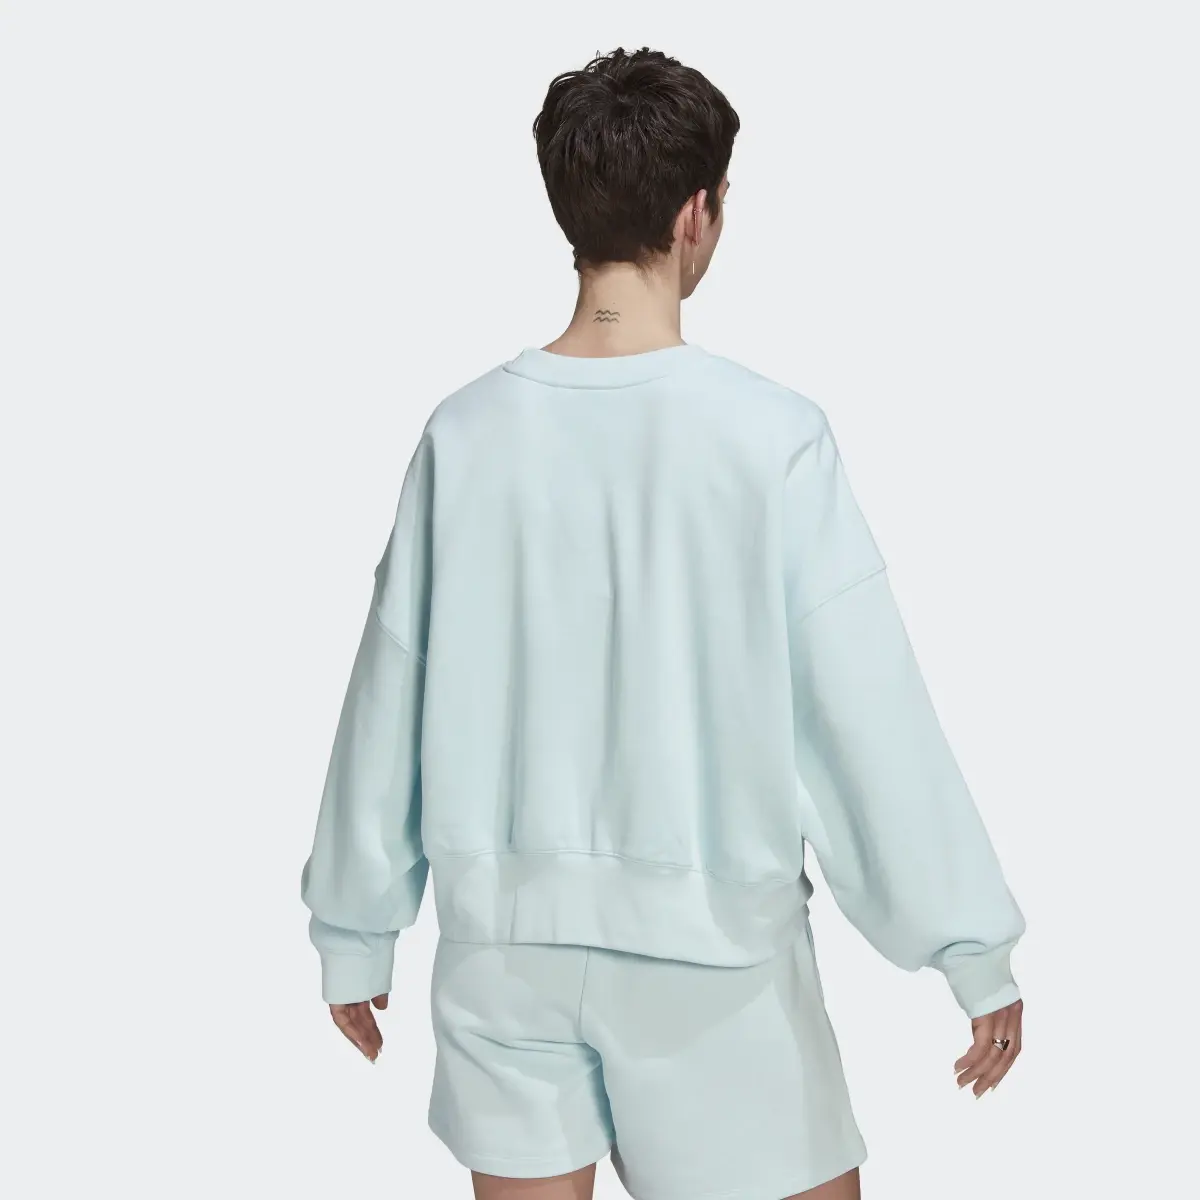 Adidas Adicolor Essentials Fleece Sweatshirt. 3